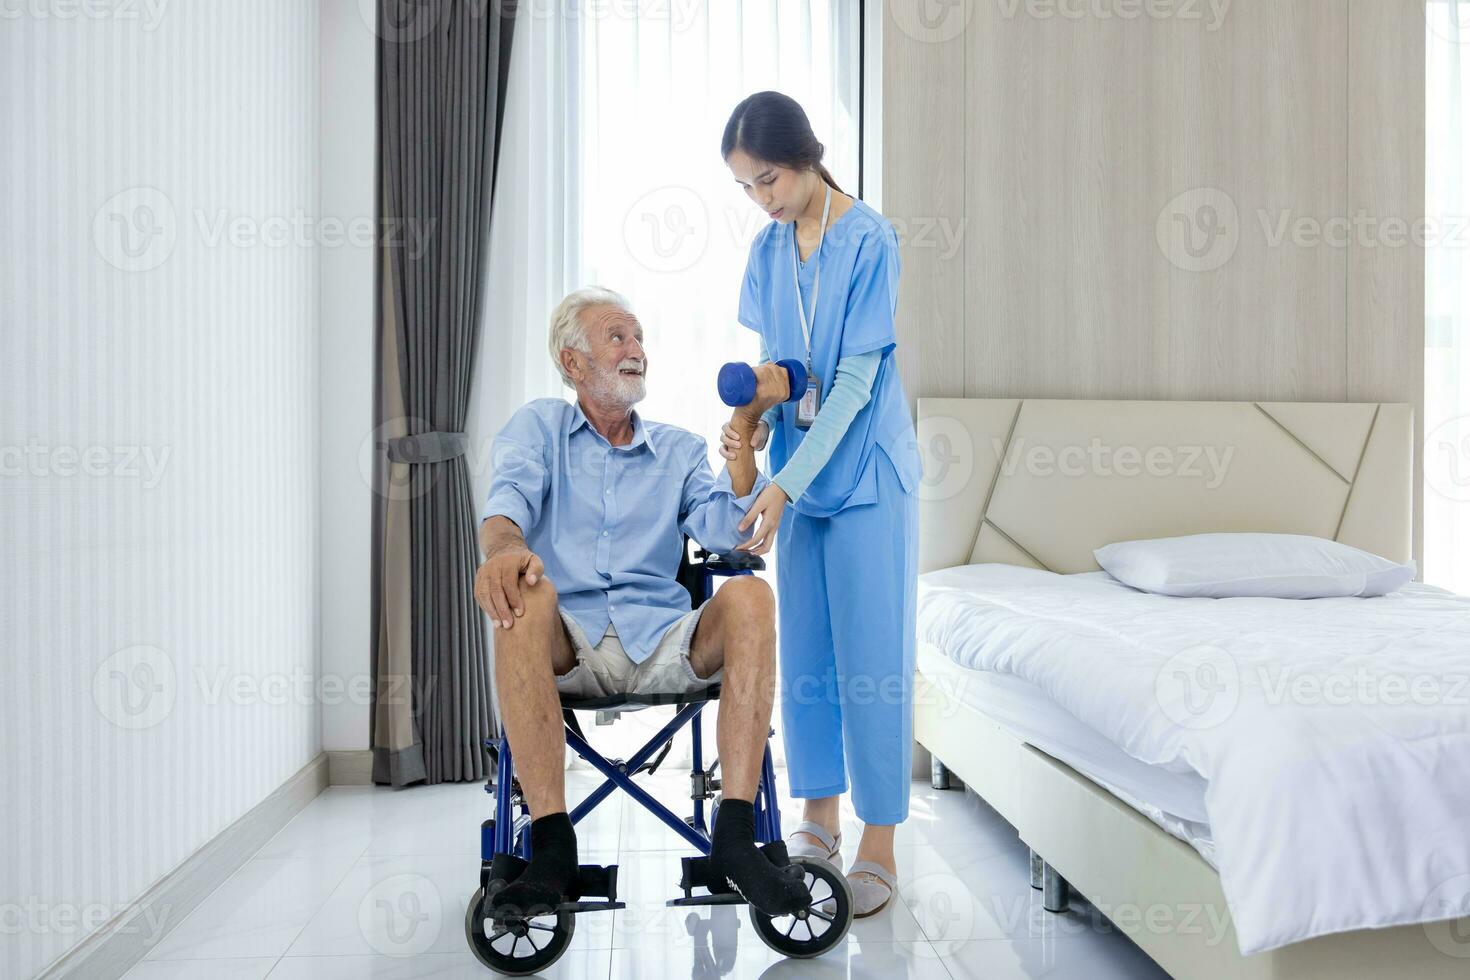 hospice infirmière est portion caucasien homme dans le fauteuil roulant à exercice muscle force dans Pension retraite centre pour Accueil se soucier réhabilitation et Publier traitement récupération processus photo